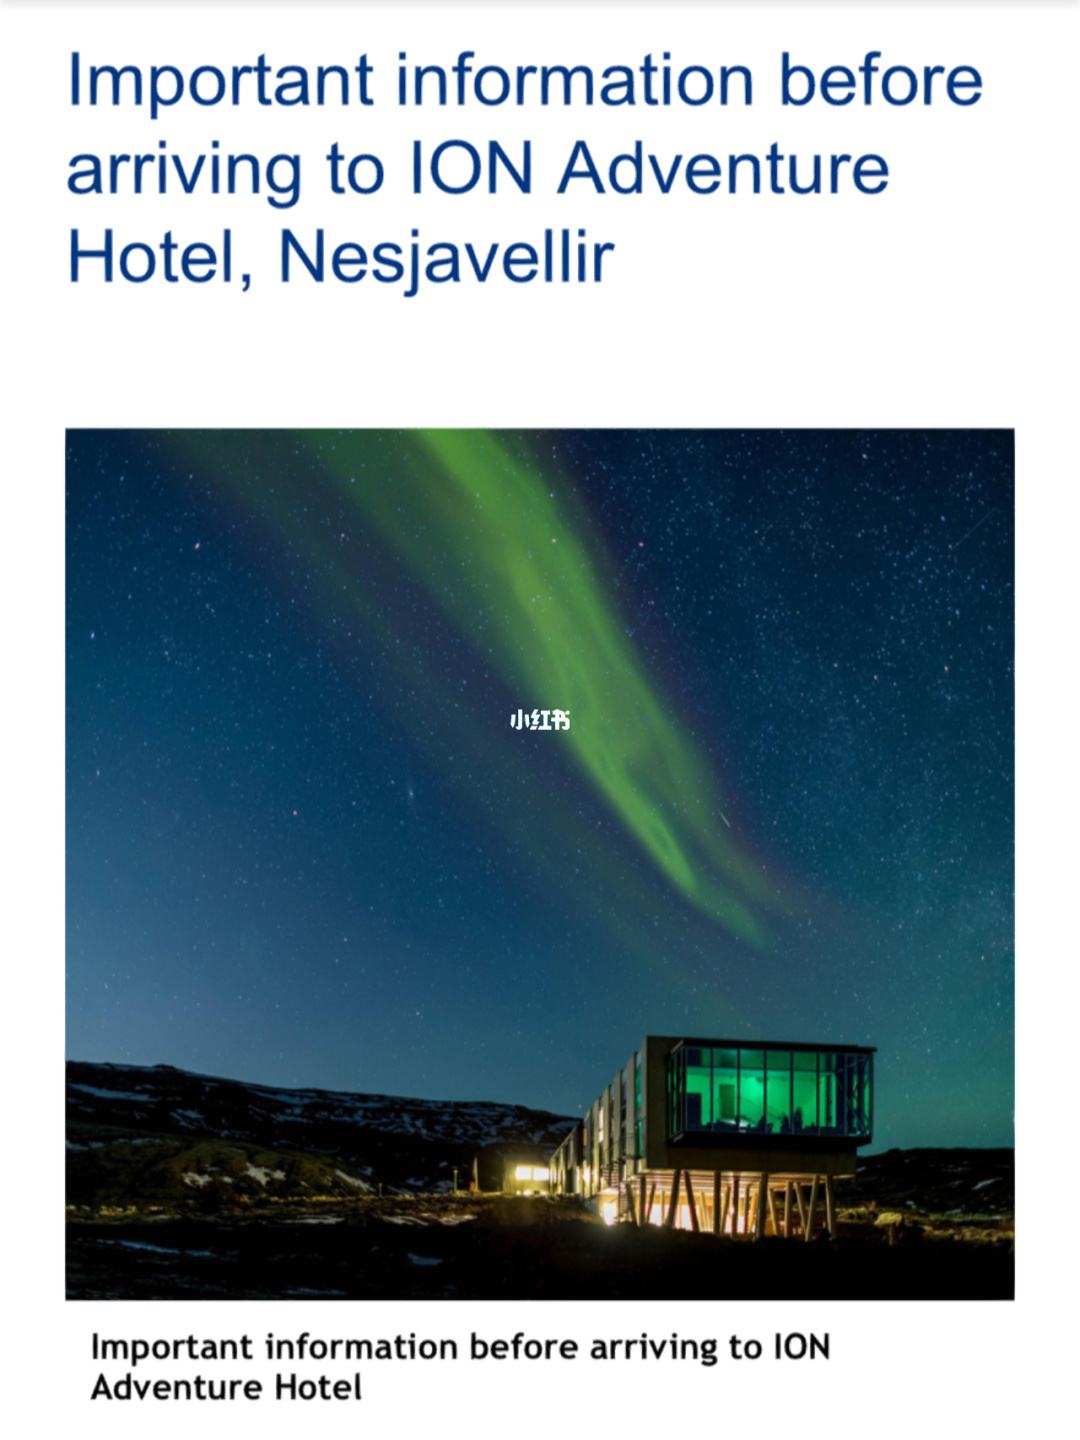 冰岛ion冒险酒店(冰岛ion豪华探险酒店)